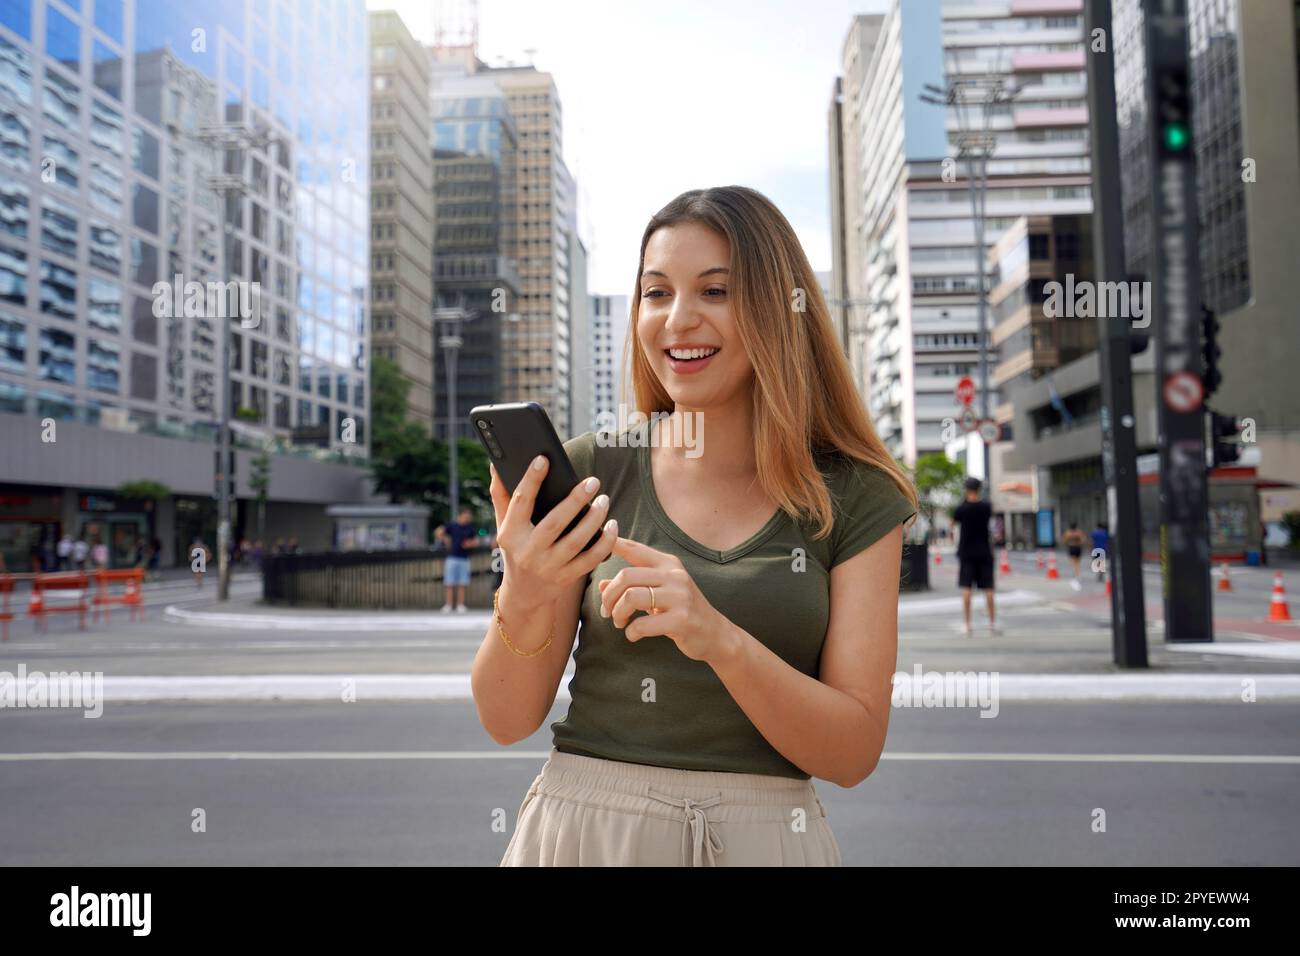 Fröhliches brasilianisches Mädchen, das tagsüber auf der Straße auf dem Telefon ein lustiges Video sieht. Braunhaarig mit einem zahnigen Lächeln und einem grünen T-Shirt. Social-Media-Suchtbegriff. Stockfoto